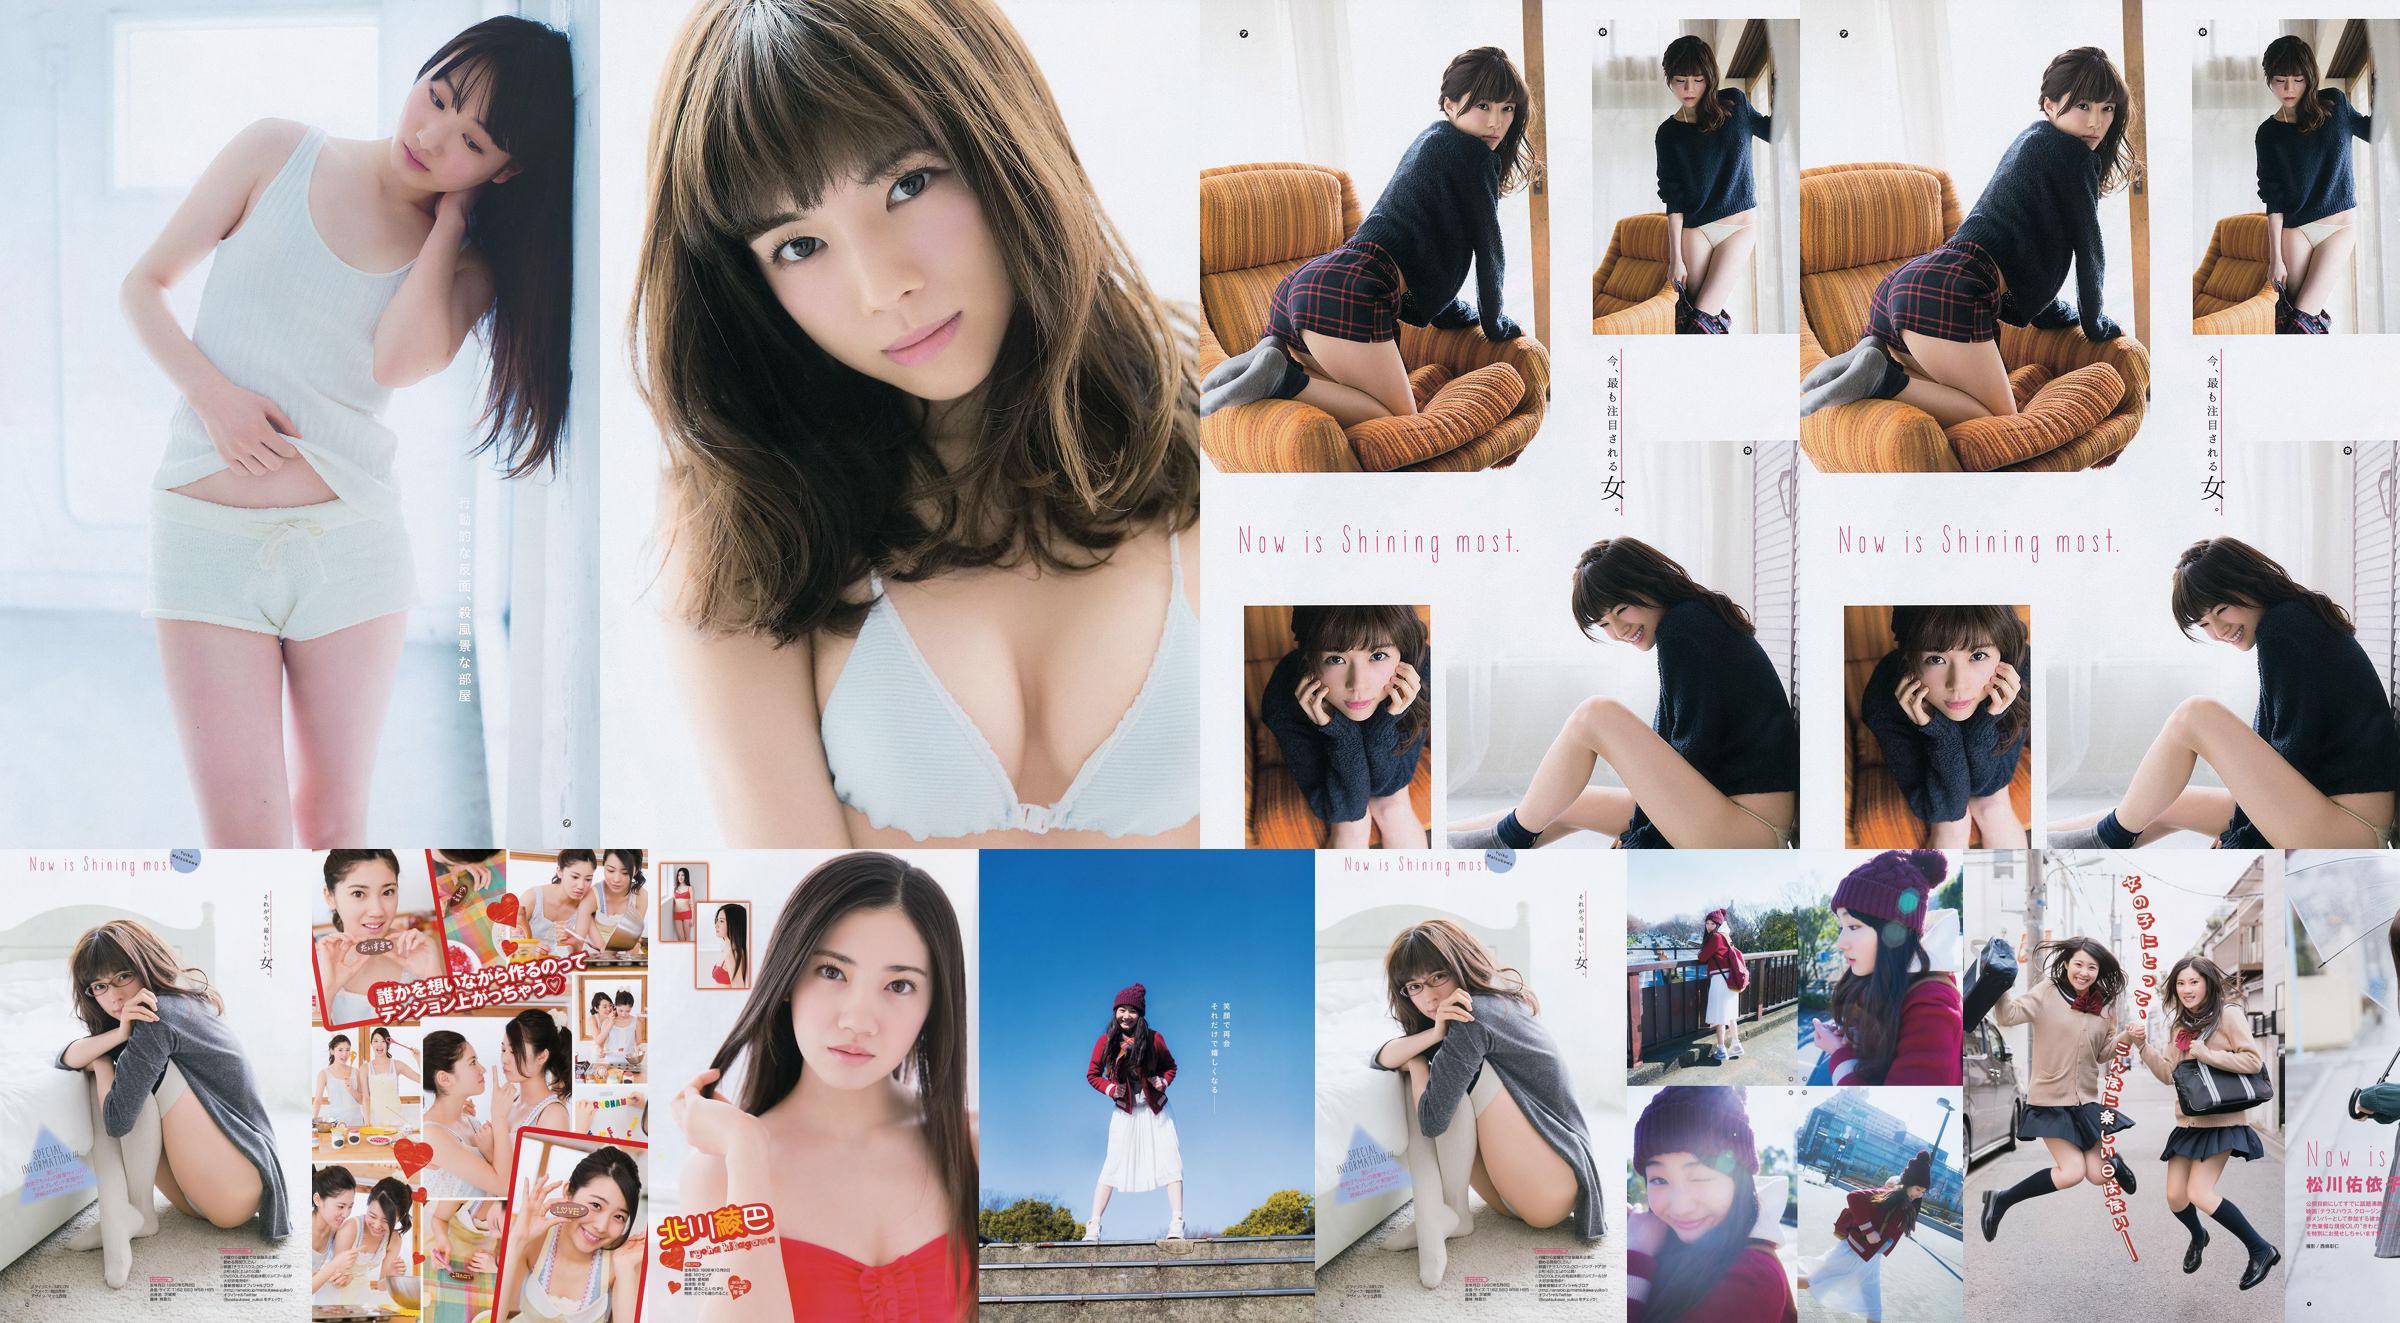 [Young Gangan] Ryoha Kitagawa Ami Miyamae Yuiko Matsukawa Narumi Akizuki 2015 No.04 Photograph No.cca4b5 Page 4